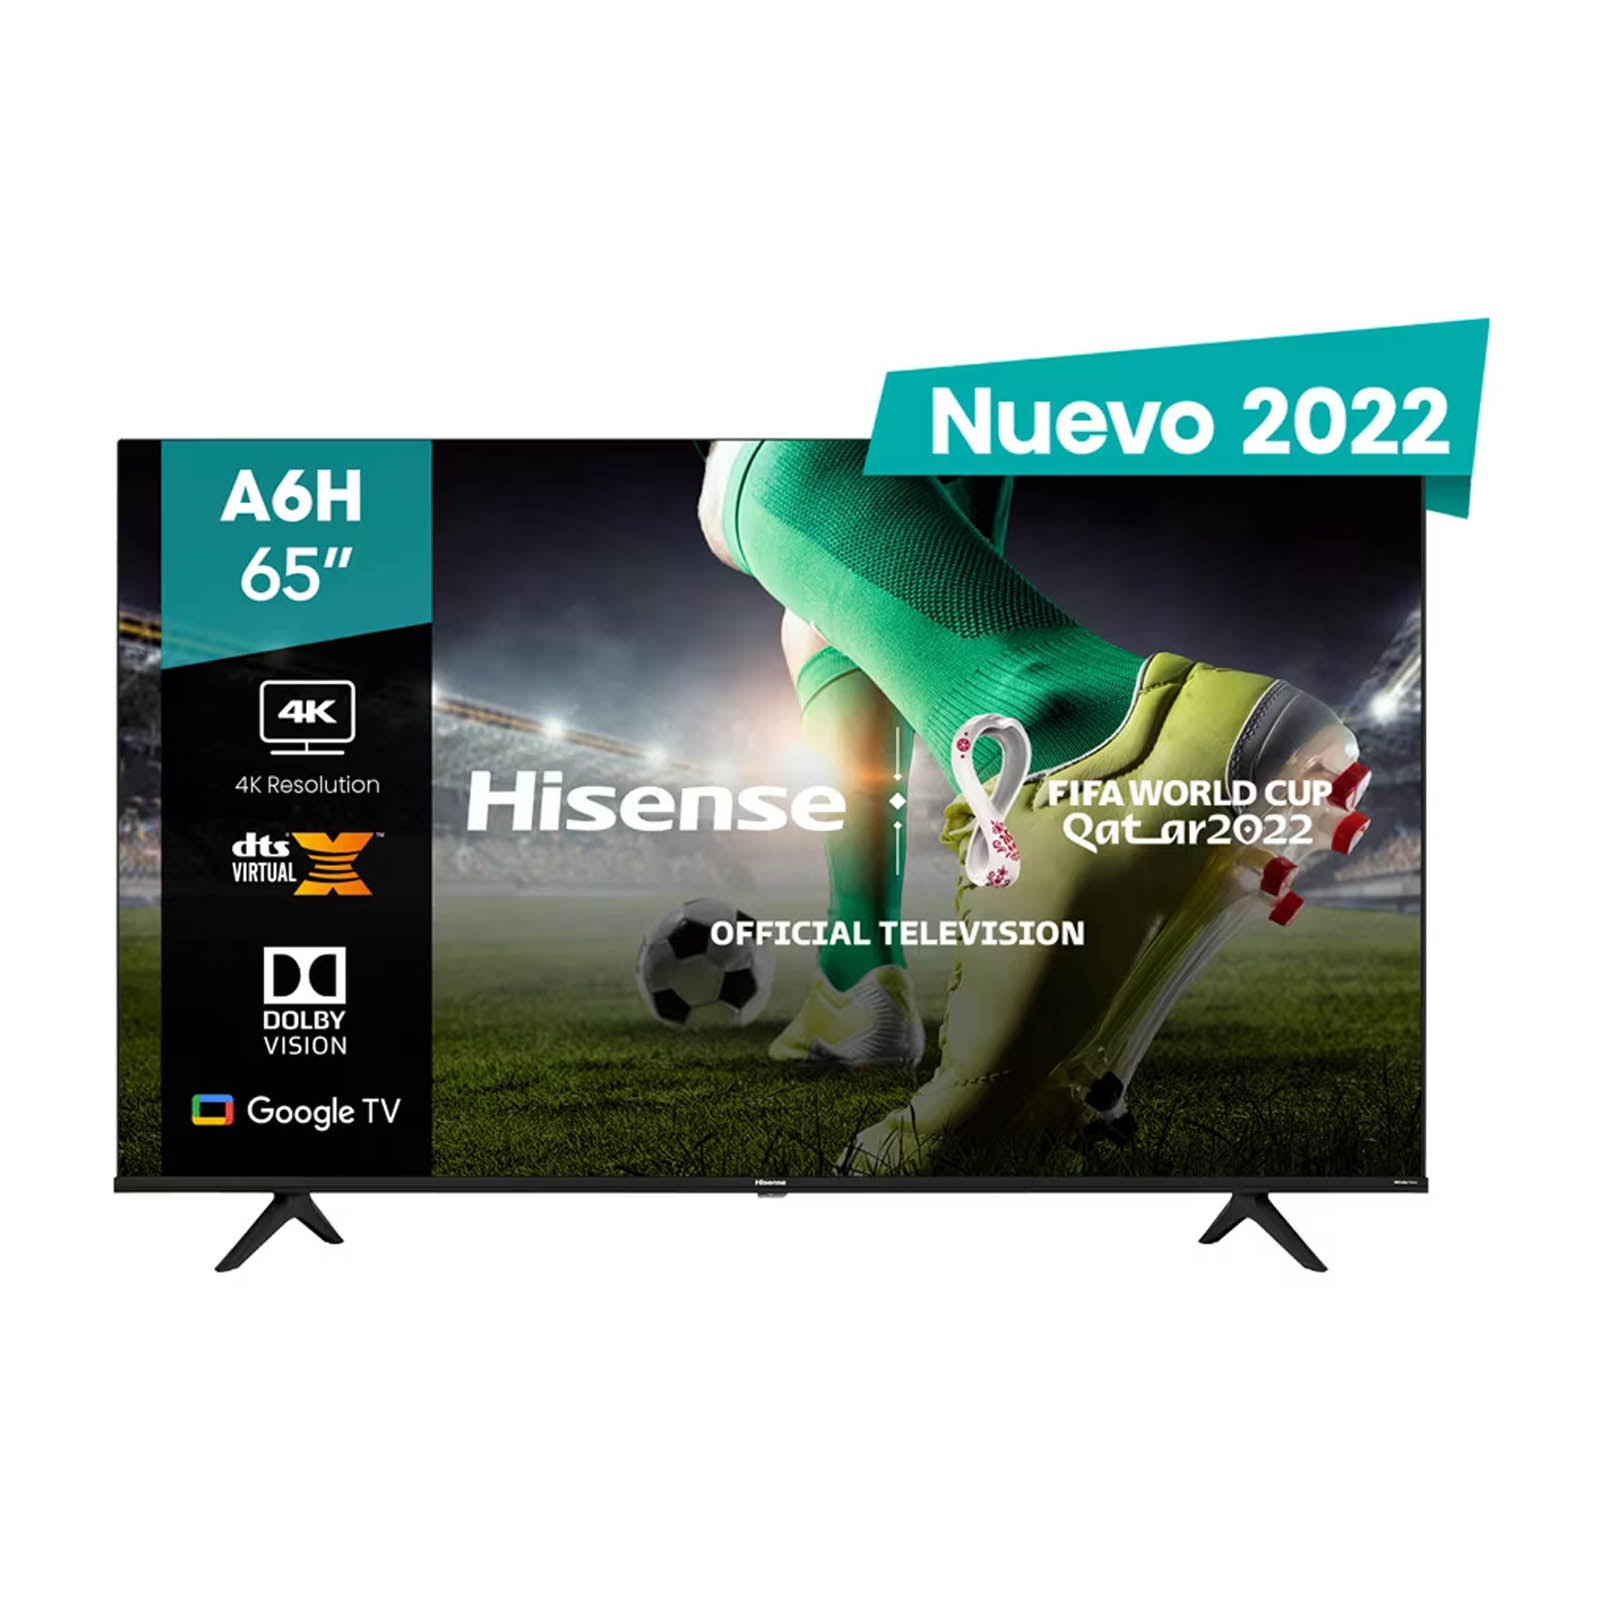 Pantalla 65 Pulgadas Hisense LED Google TV 4K Ultra HD 65A6H – MegaAudio